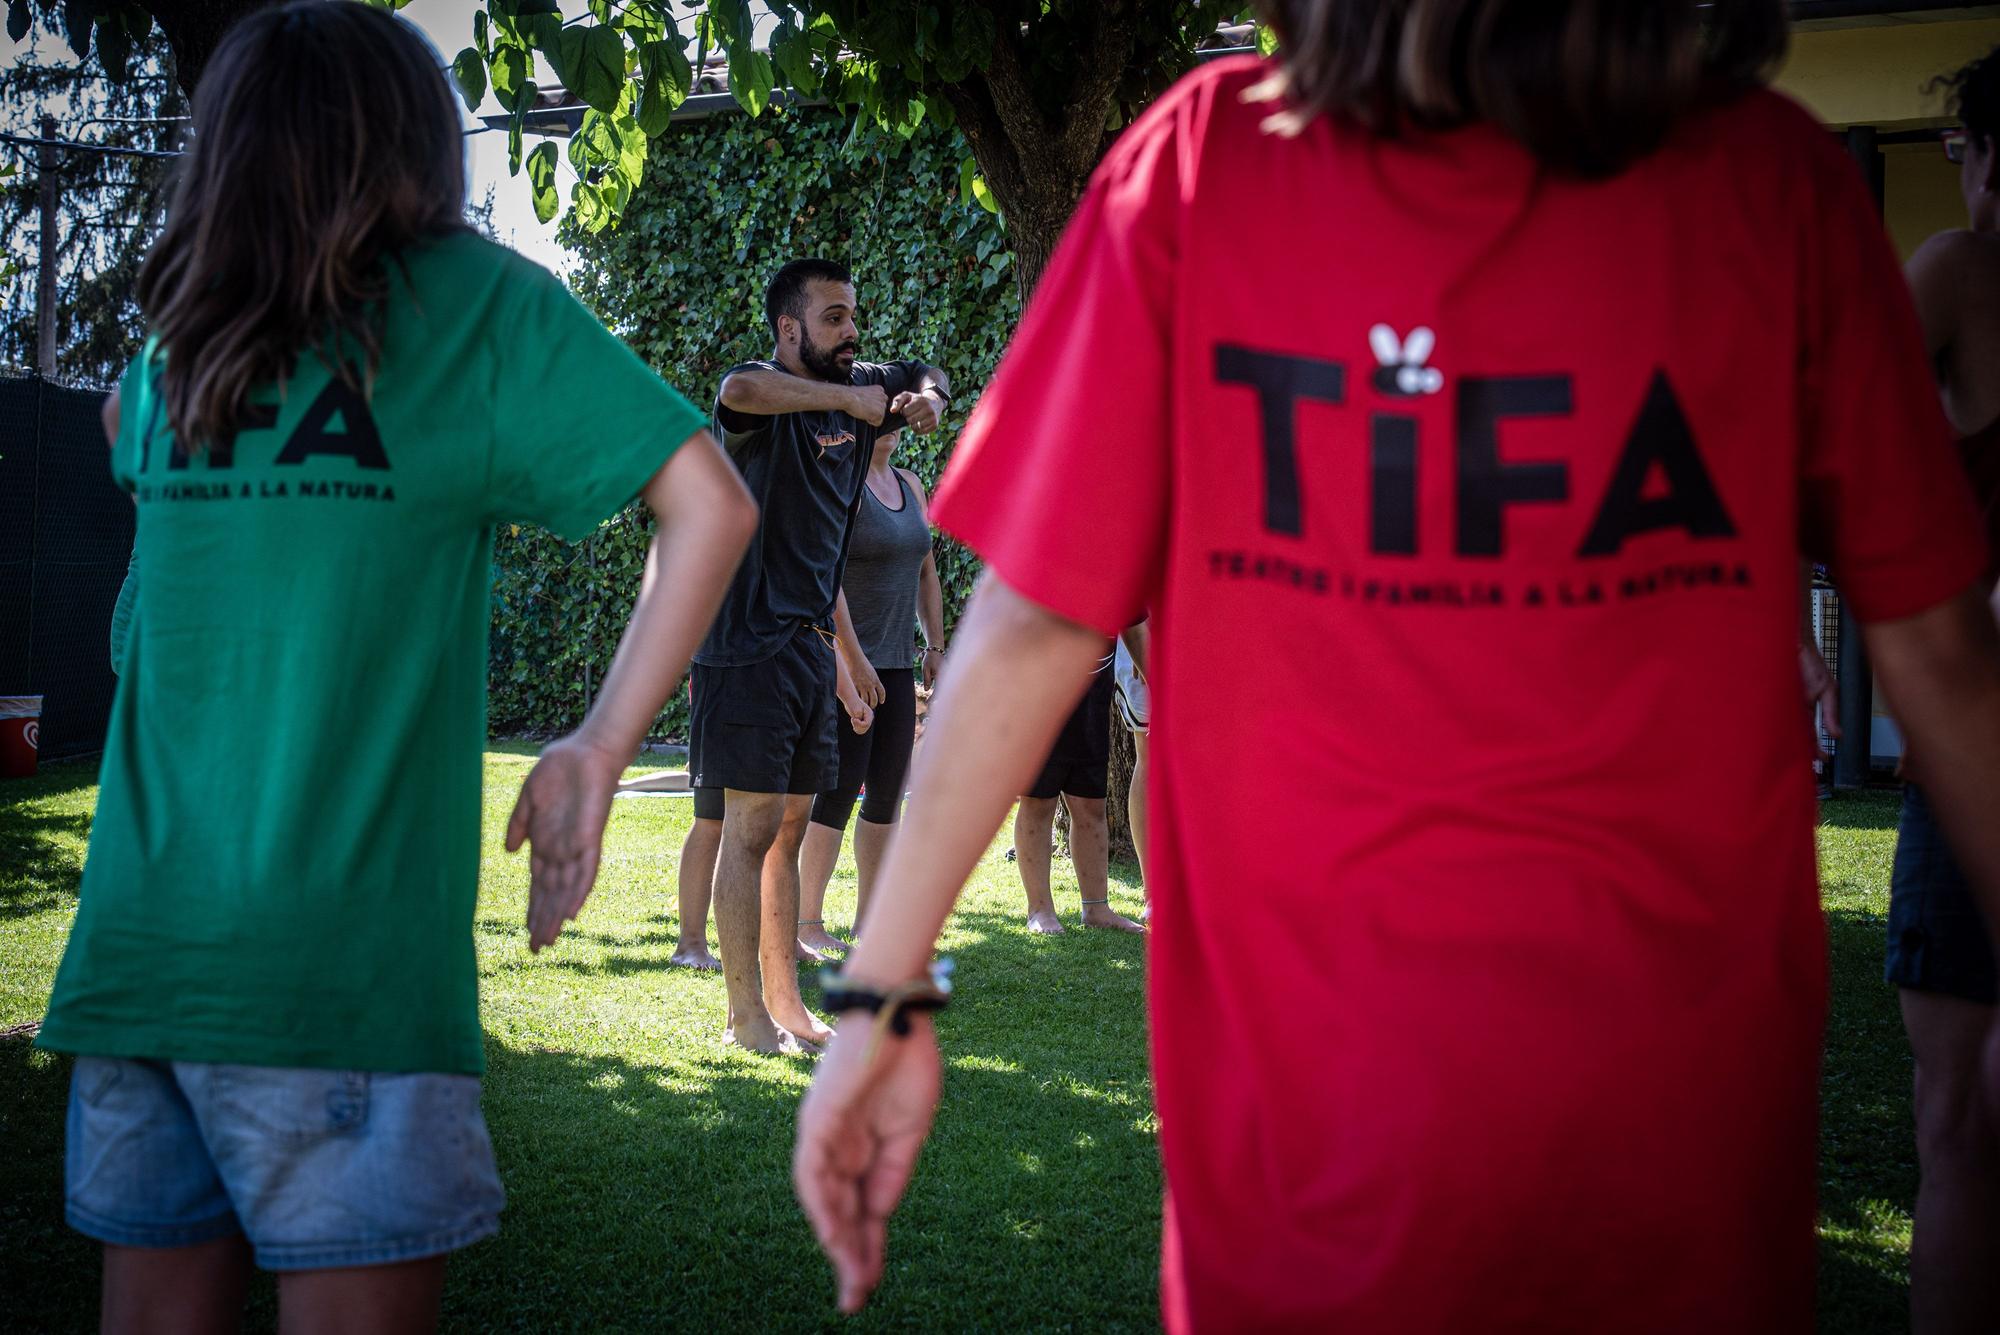 Les millors imatges del Festival TIFA